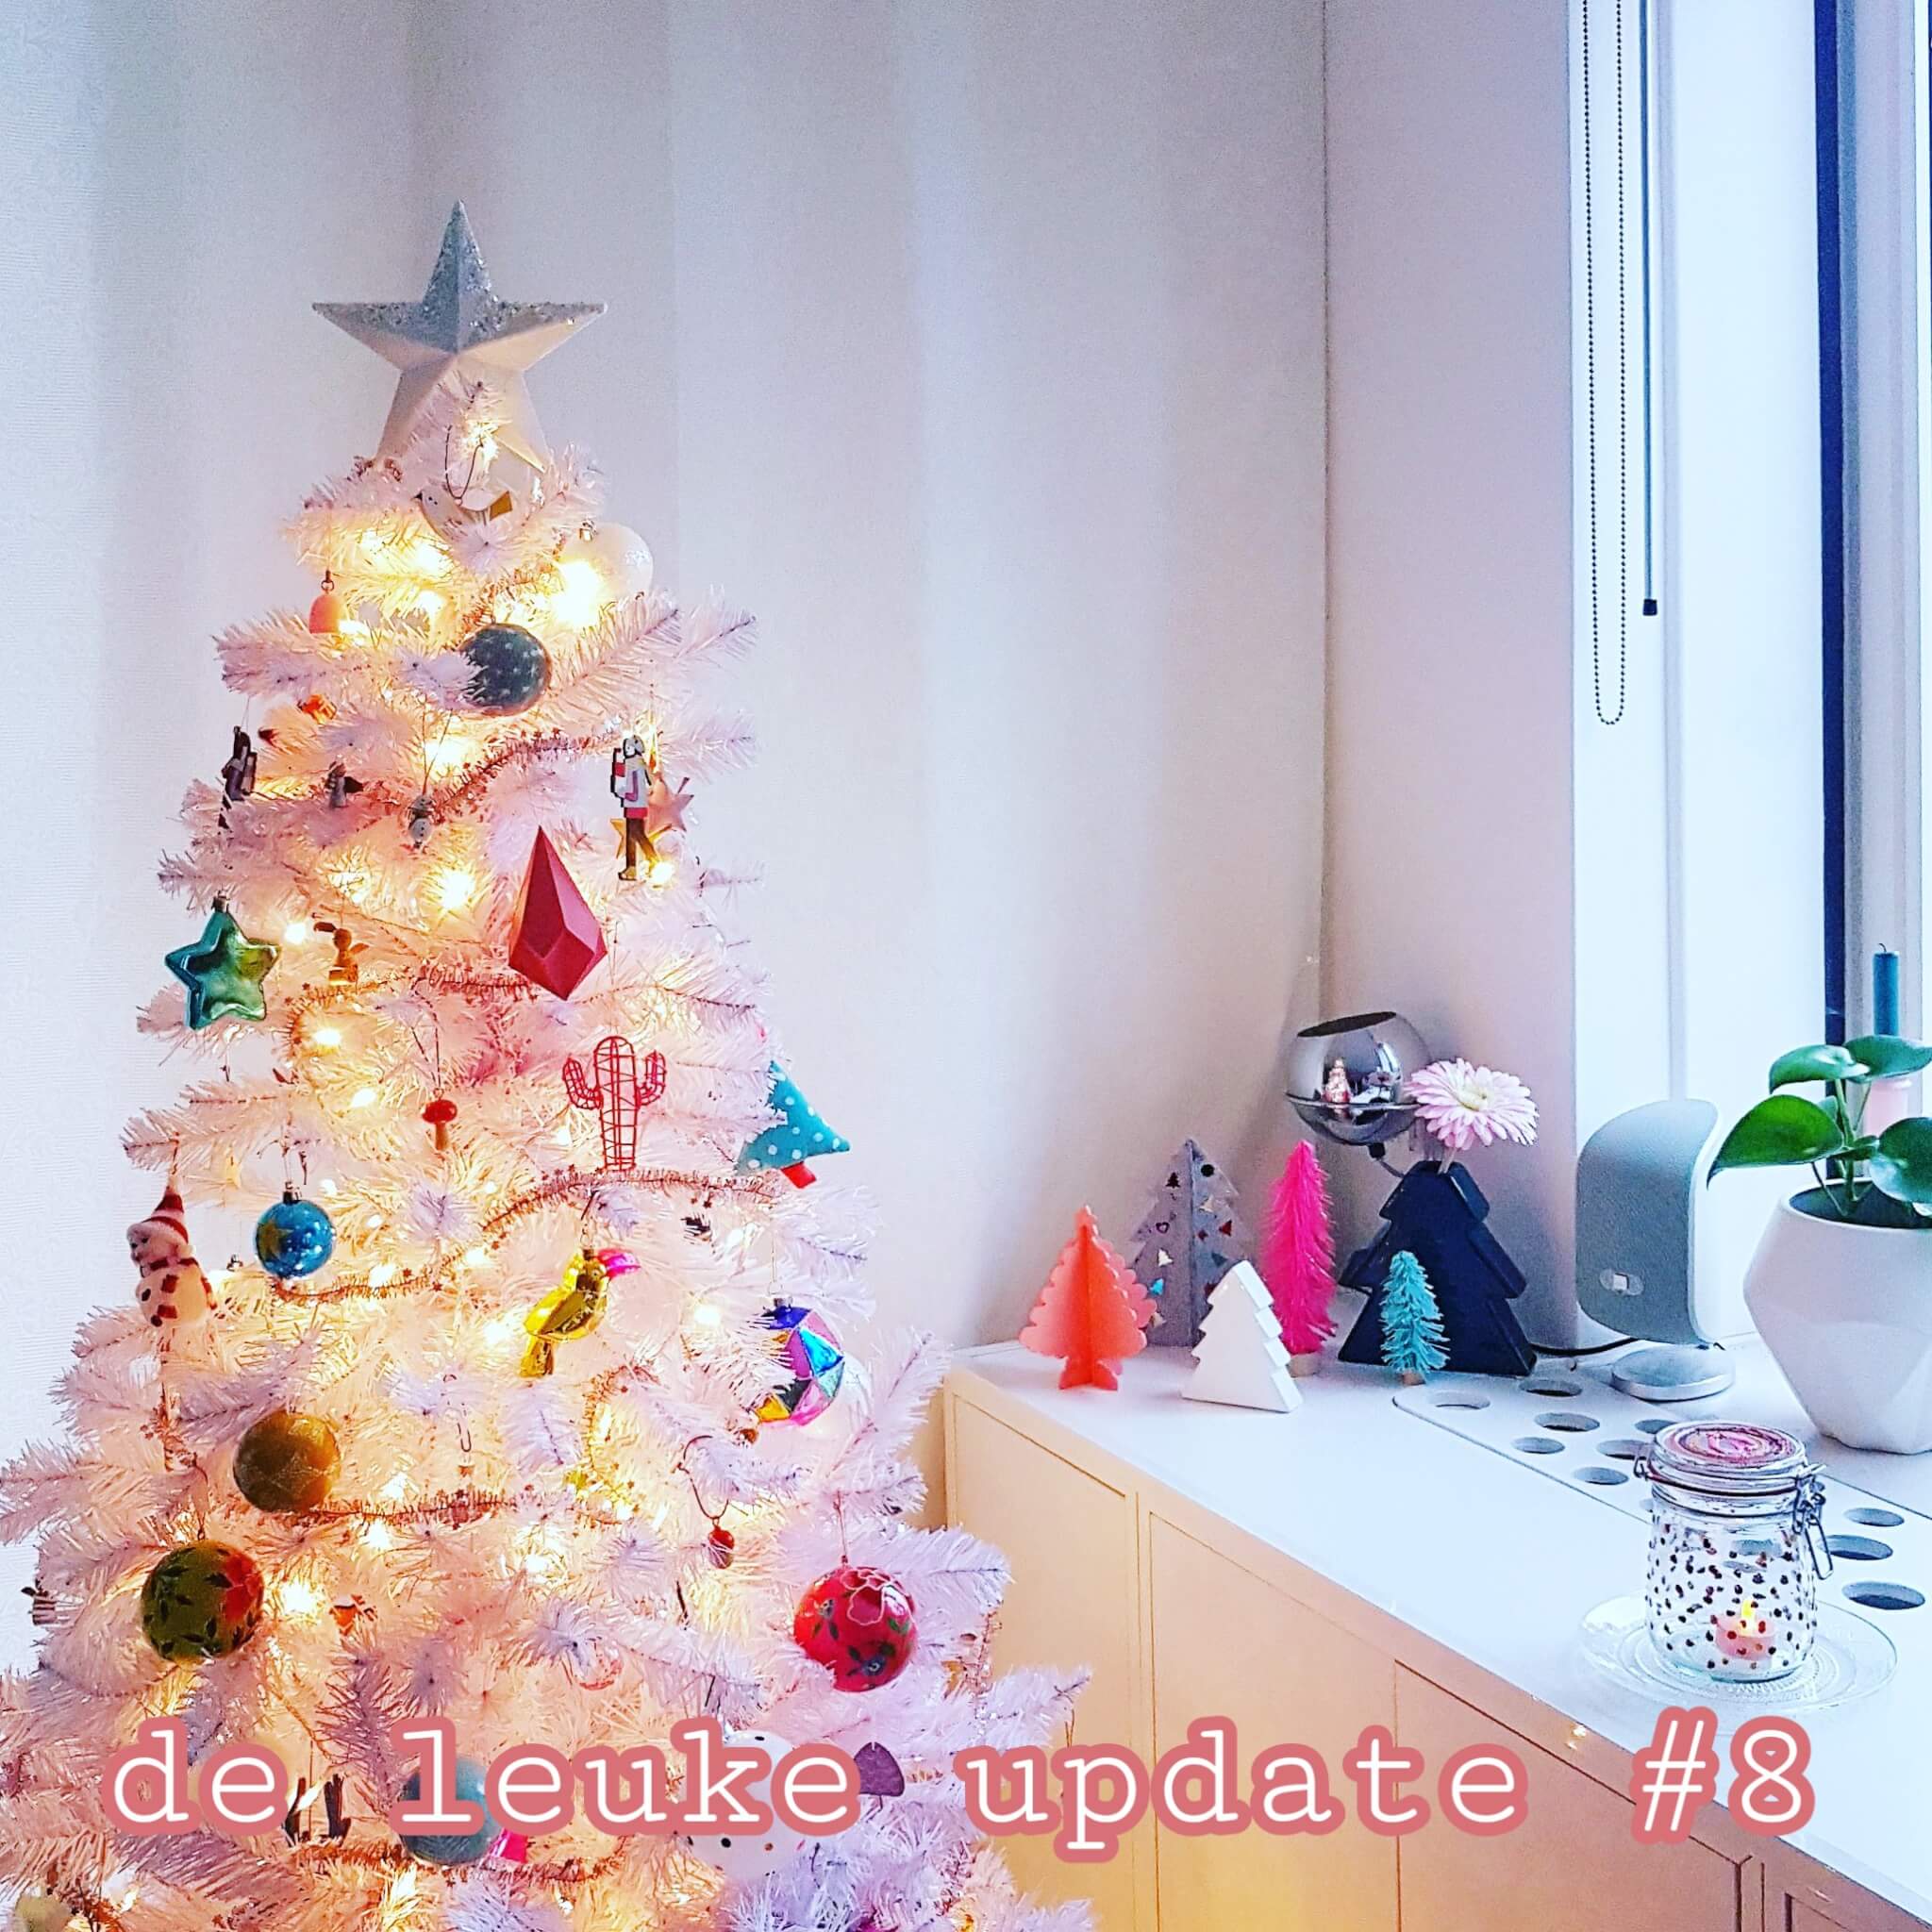 De Leuke Update #8 | Alles over kerst & heel veel kids uitjes